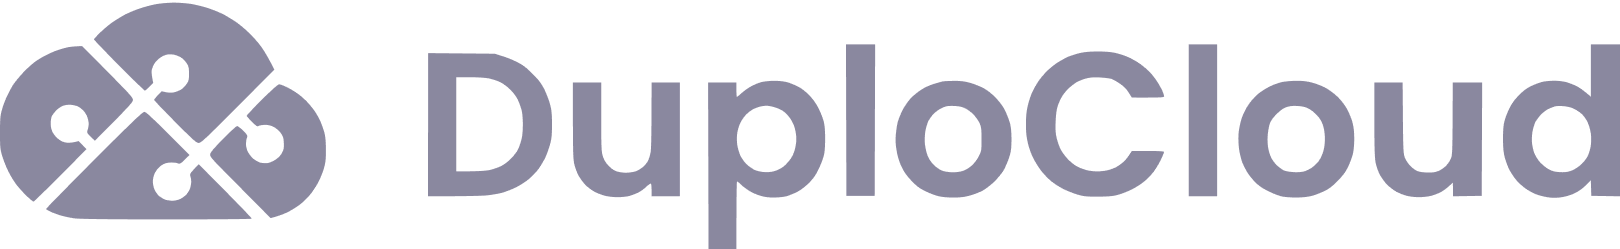 DuploCloud logo